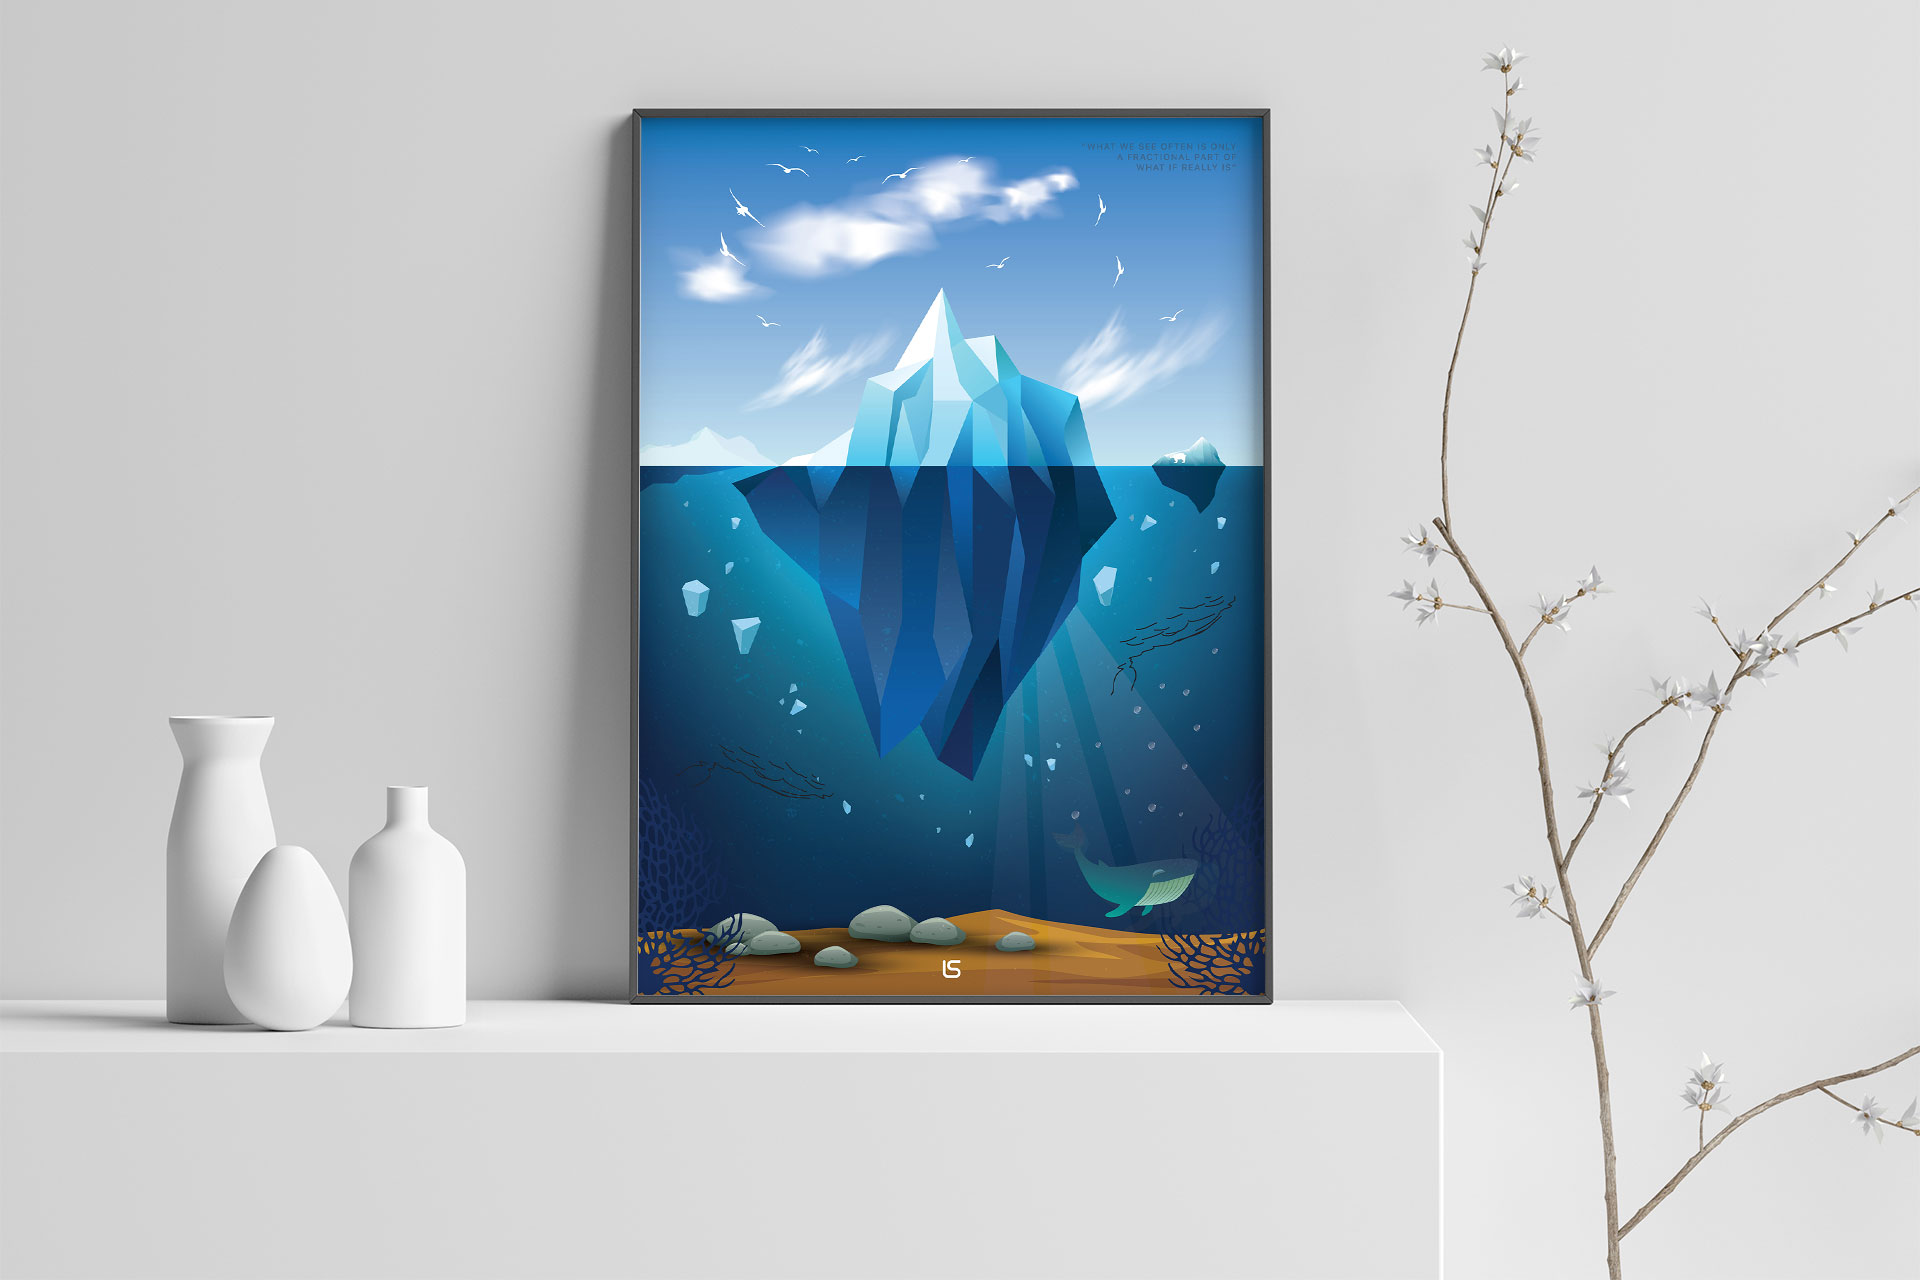 Iceberg Poster